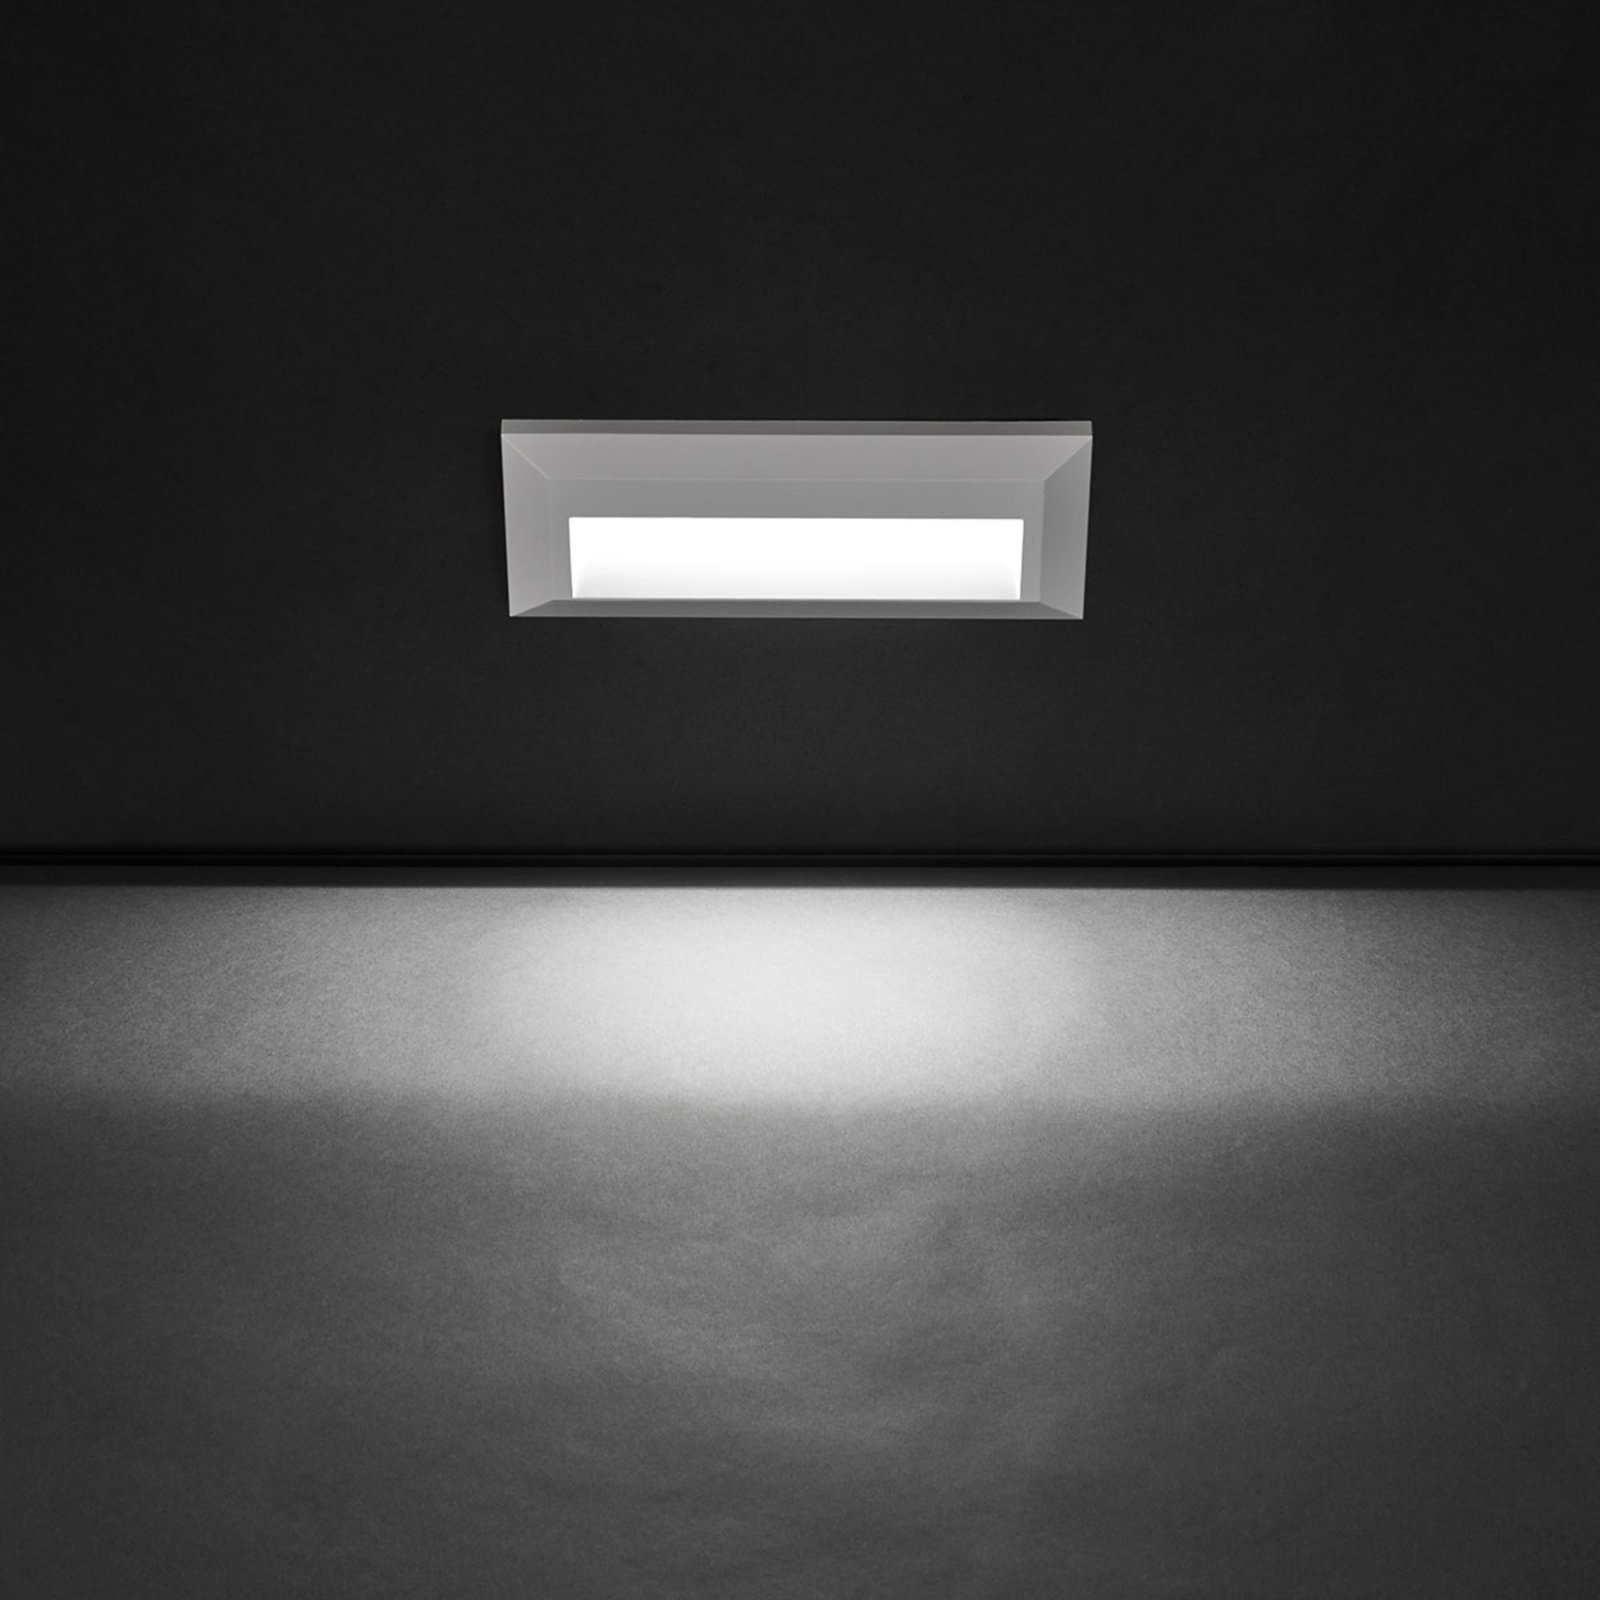 Platus šviesos diodų lauko sieninis šviestuvas "Kössel